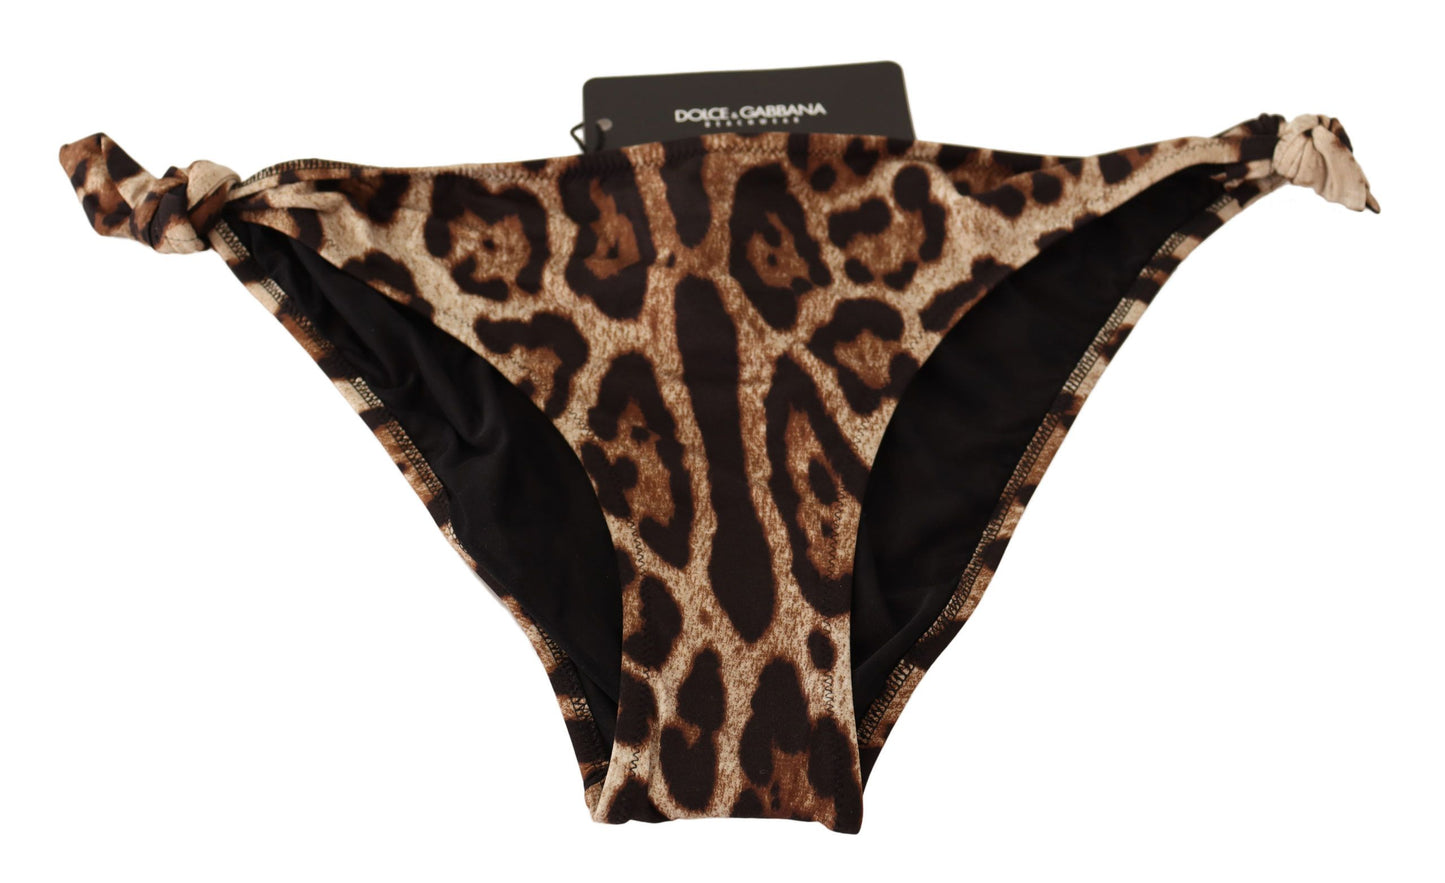 Dolce & Gabbana Bikini Bottom Brown Leopard Print Swimswear